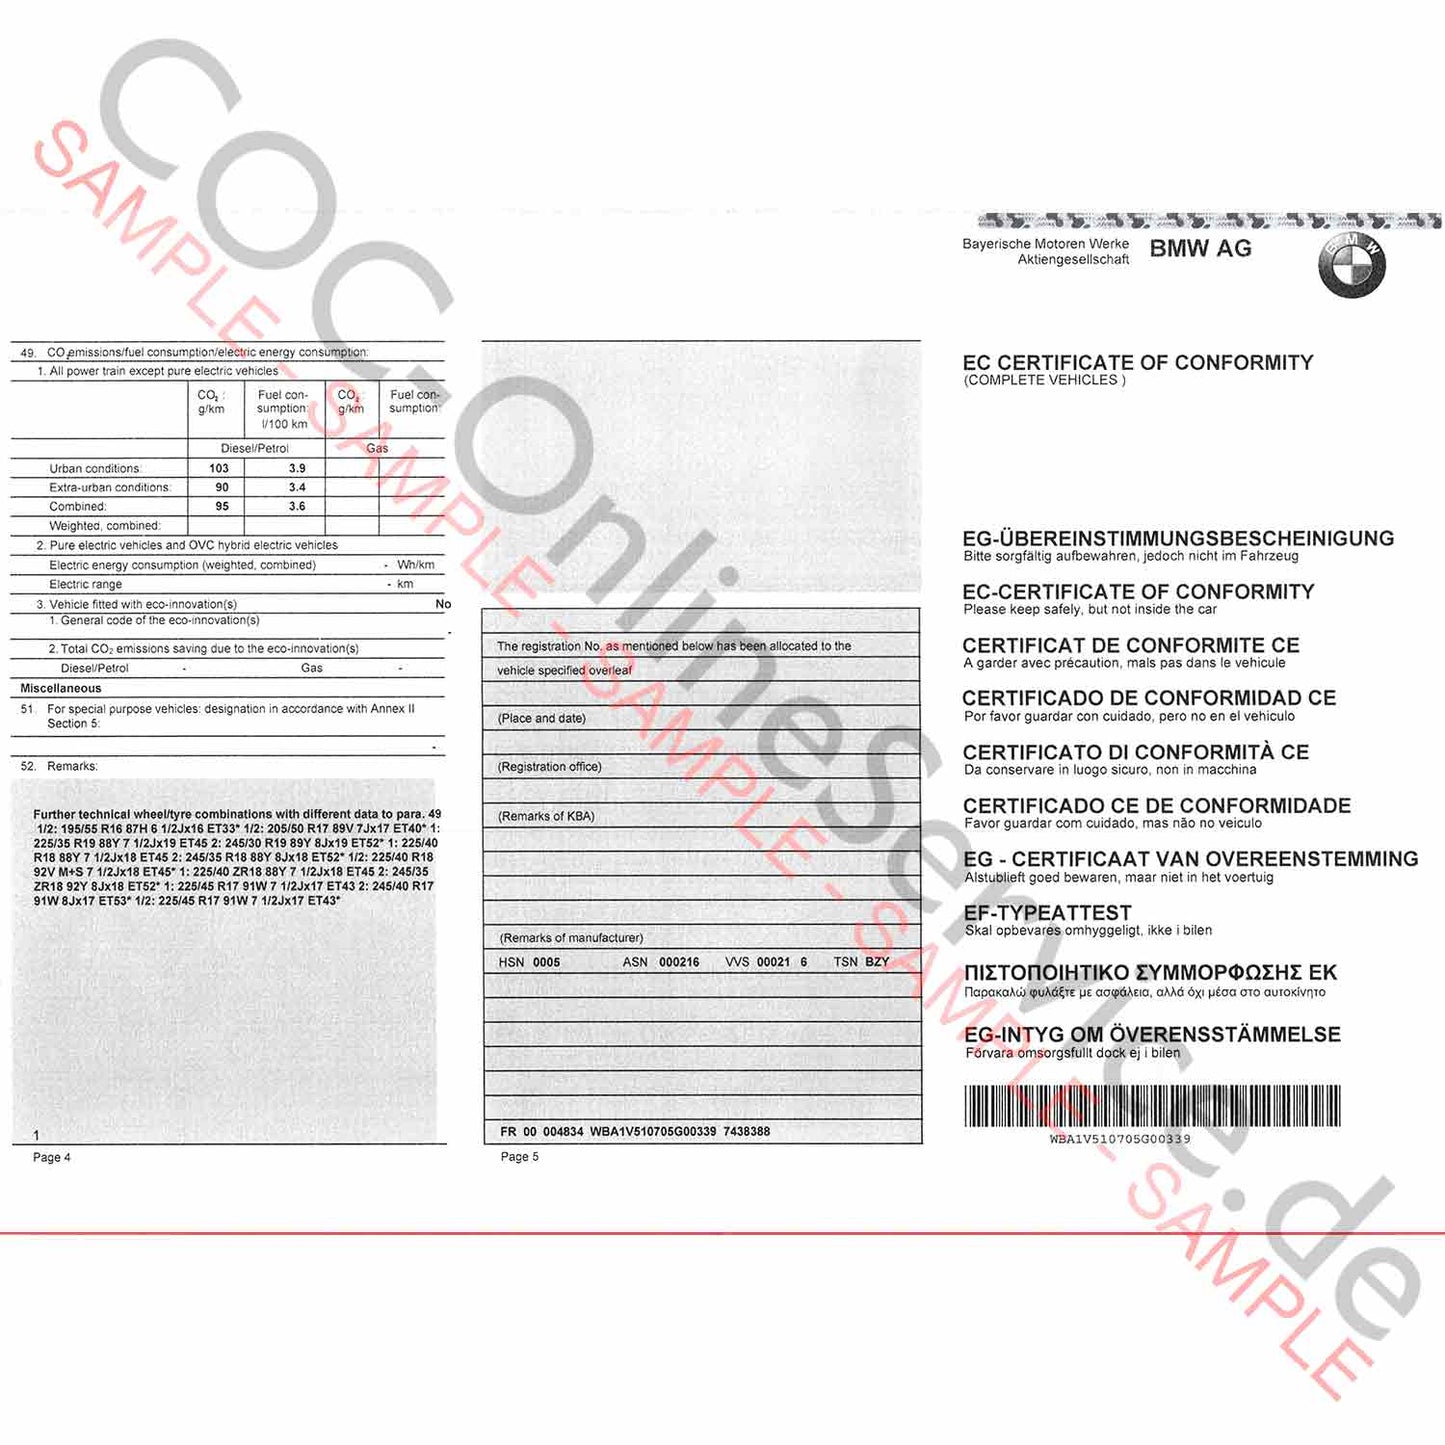 COC-papieren voor BMW (certificaat van overeenstemming)